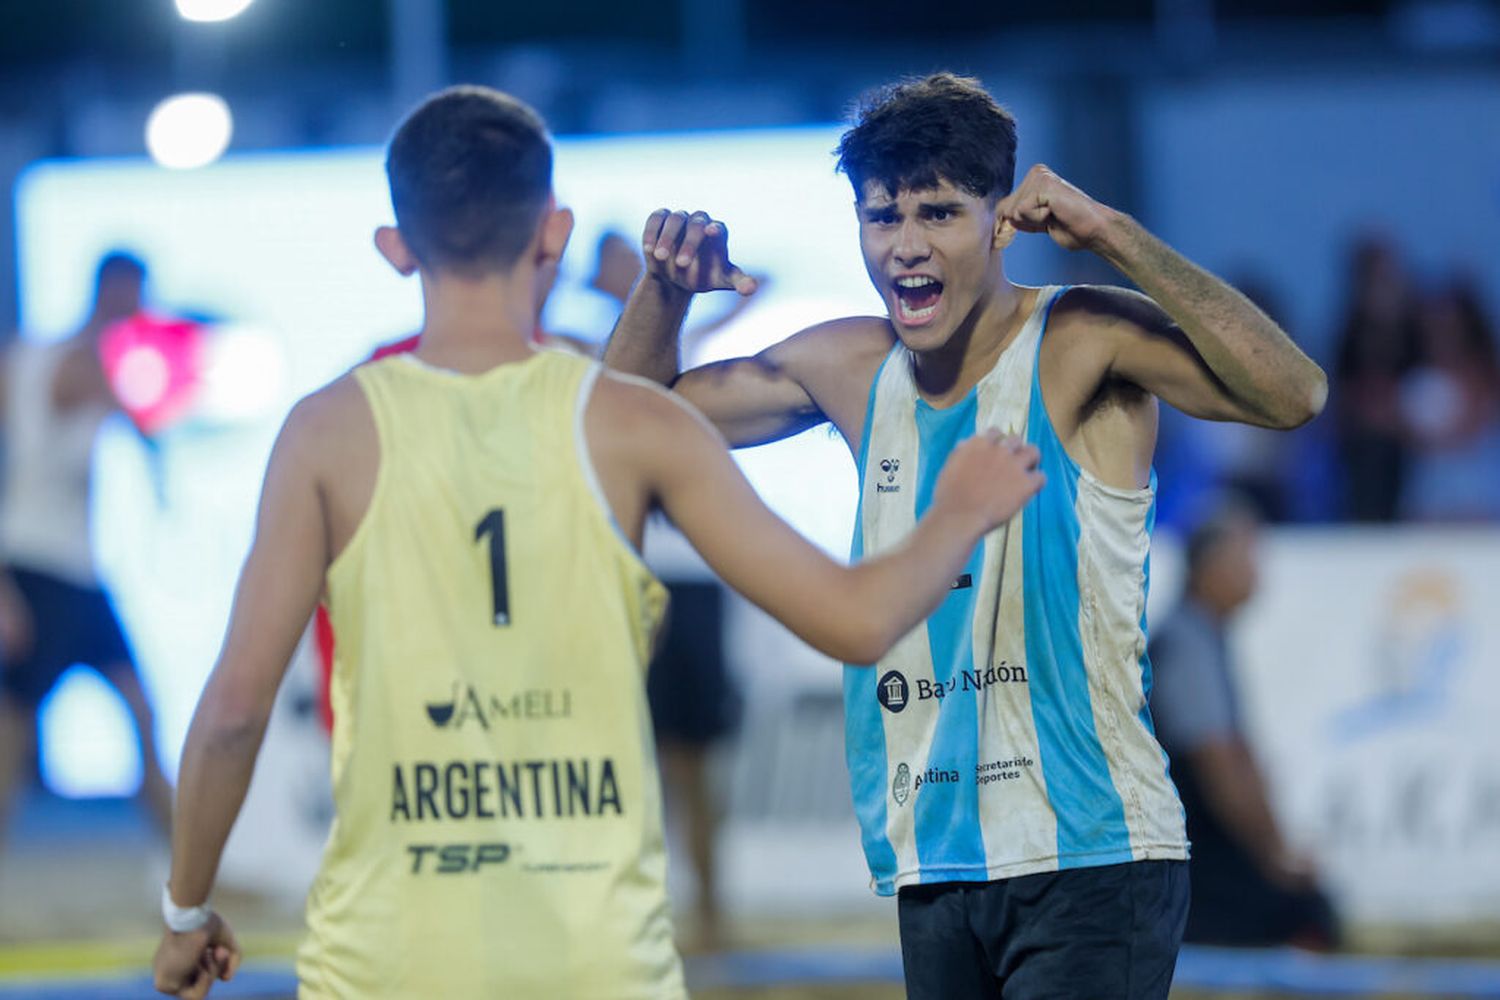 Los Juveniles argentinos fueron 5° en el Mundial de Beach Handball